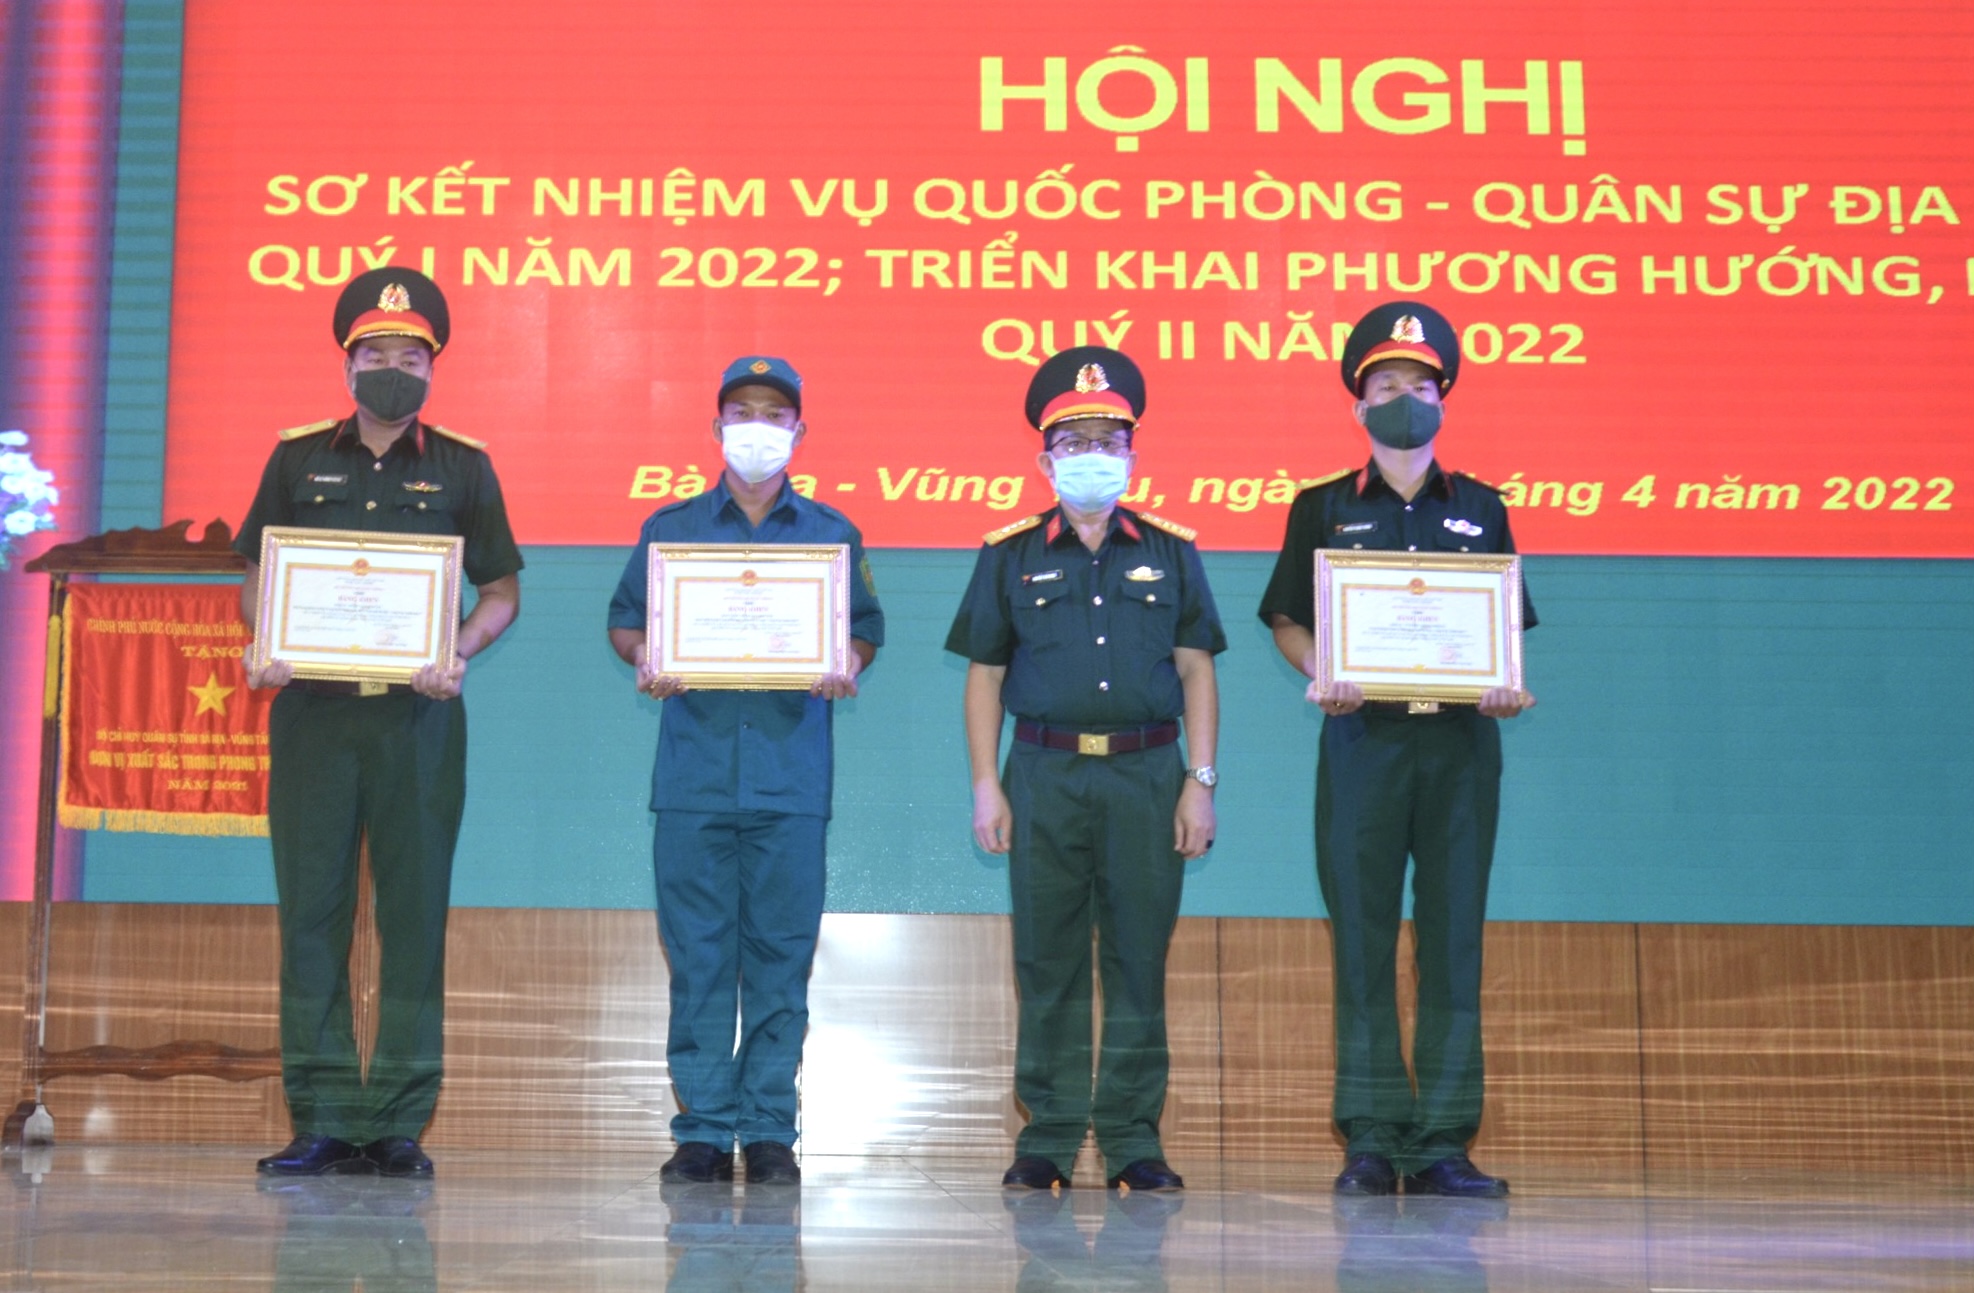 Đại tá Nguyễn Tâm Hùng, Chỉ huy trưởng Bộ CHQS tỉnh trao Bằng khen của Bộ trưởng Bộ Quốc phòng cho các tập thể, cá nhân có thành tích xuất sắc trong công tác phòng chống dịch COVID-19 đợt thứ 4.